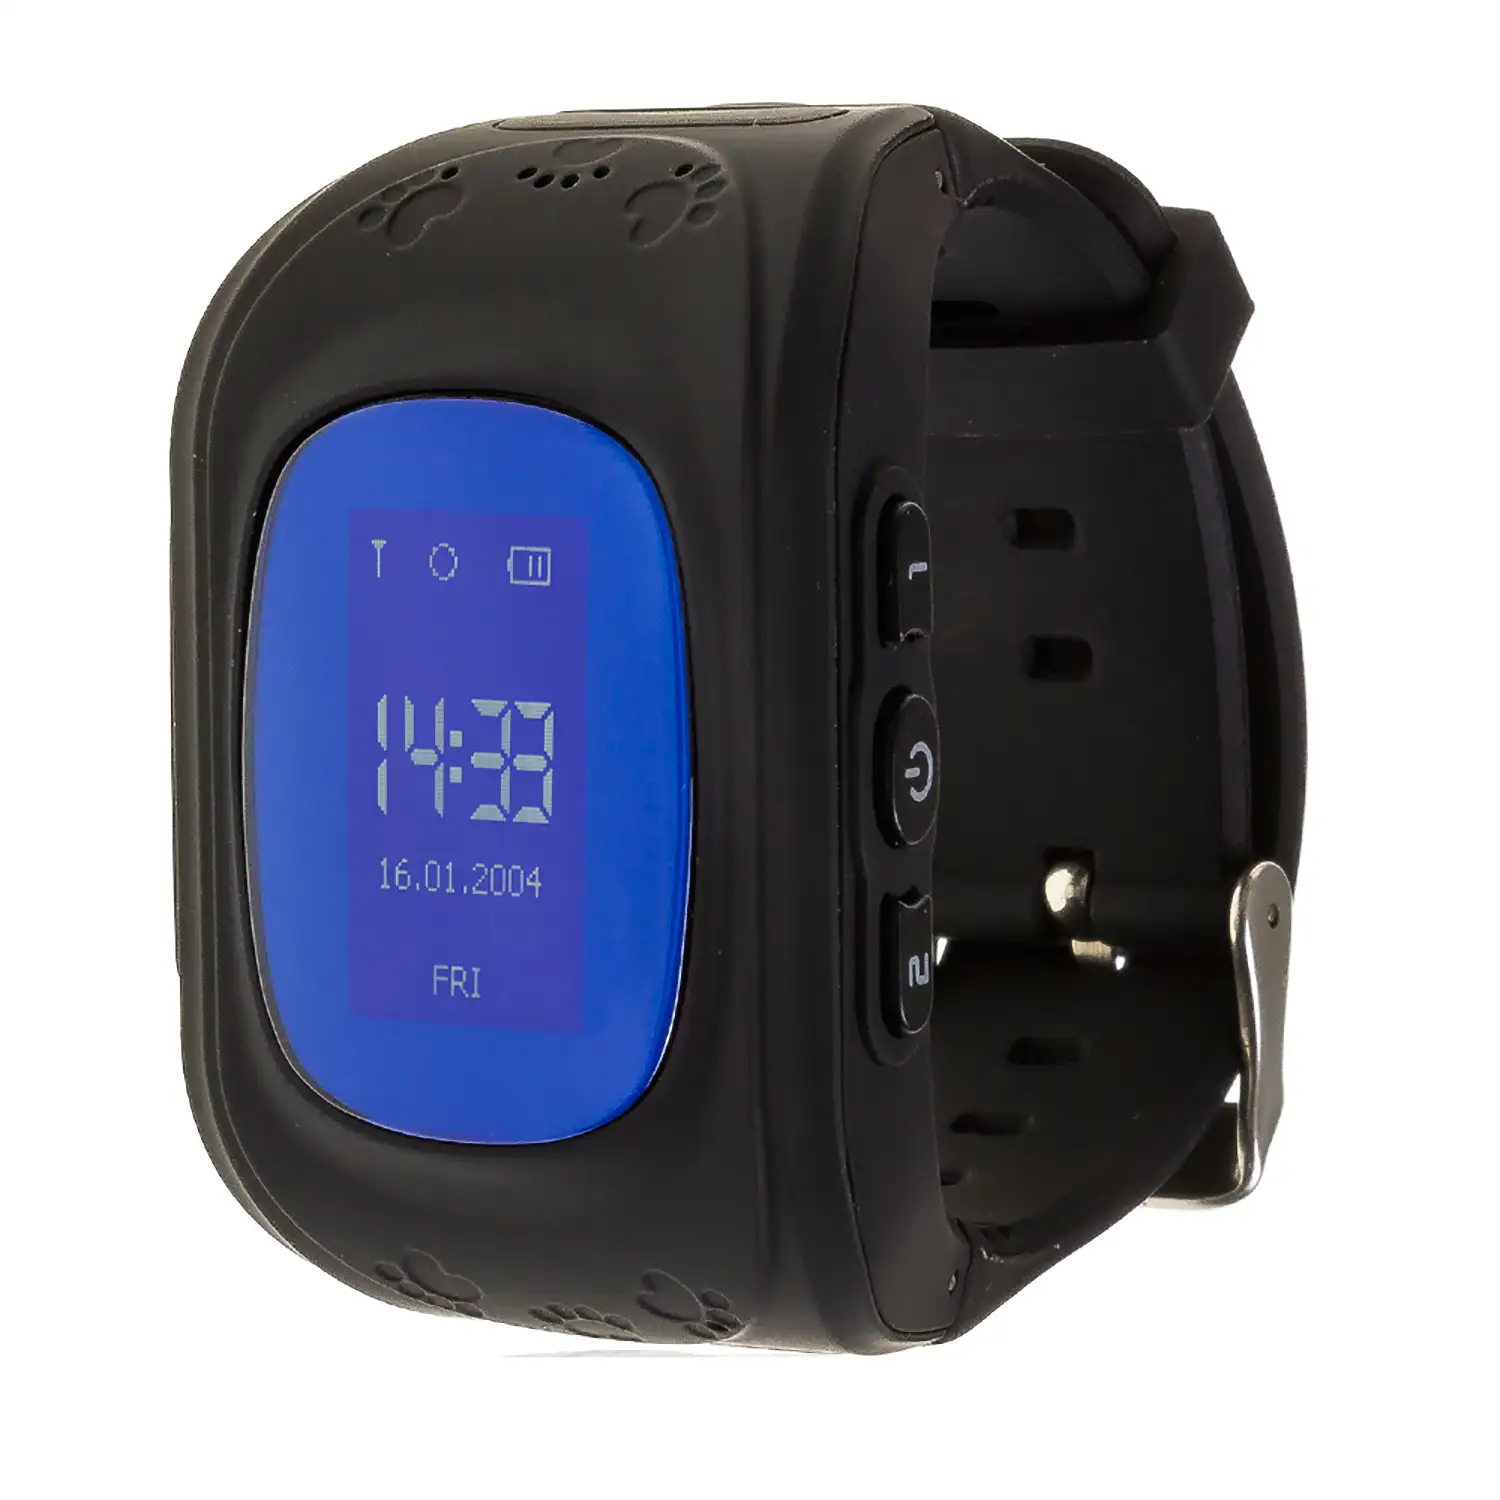 Smartwatch GPS especial para niños, con cámara, función de rastreo, llamadas  SOS y recepción de llamada.